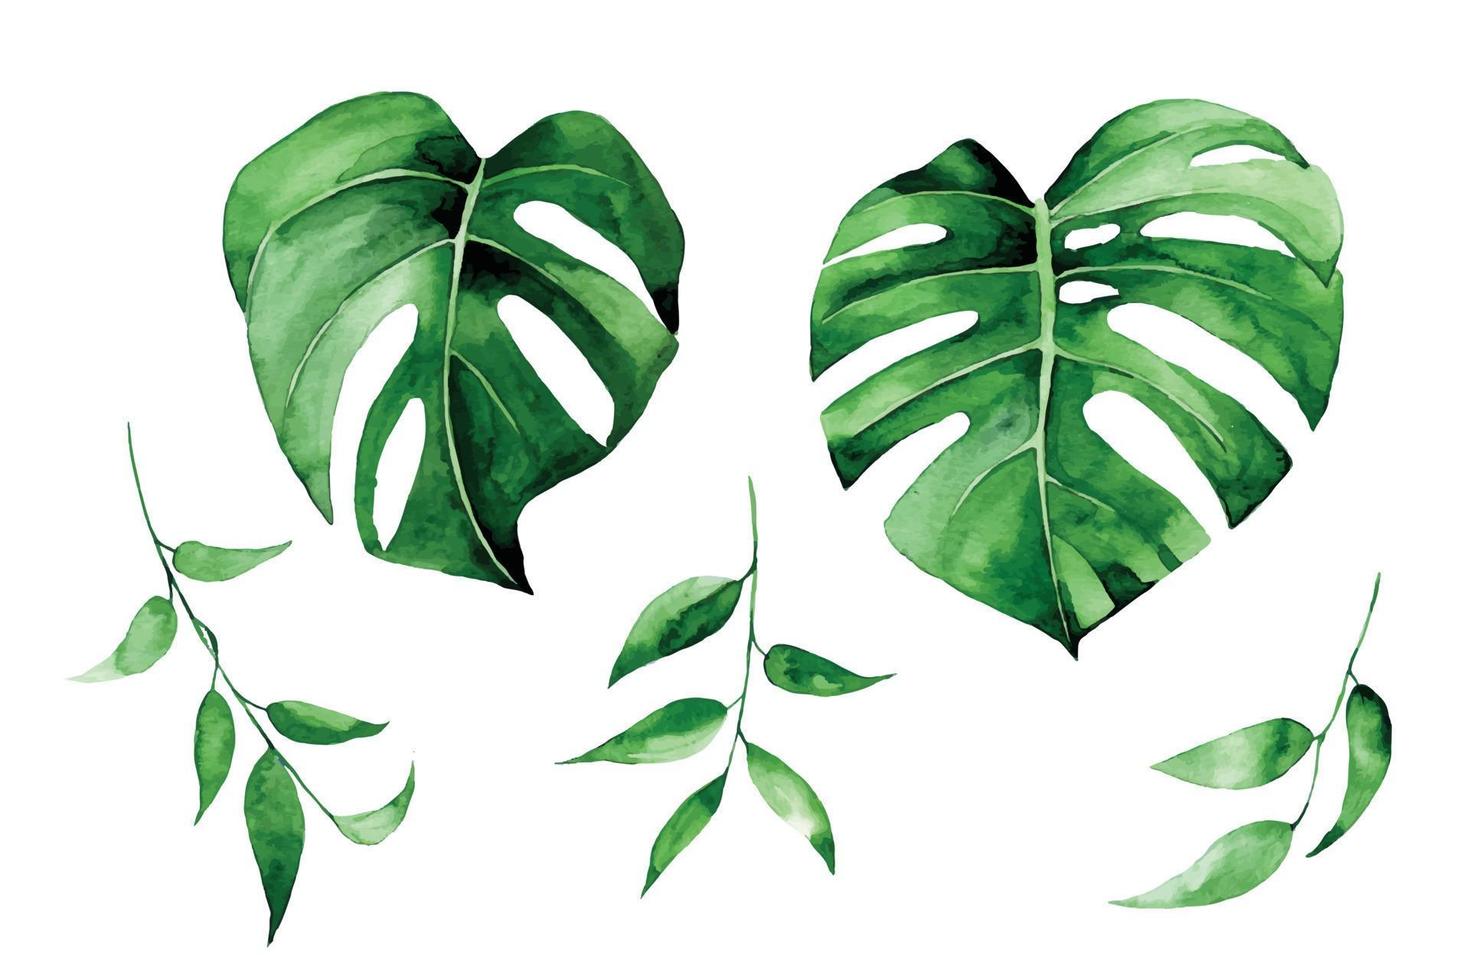 aquarel illustratie. set van tropische bladeren van groene kleur geïsoleerd op een witte achtergrond. monstera bladeren, clipart vector